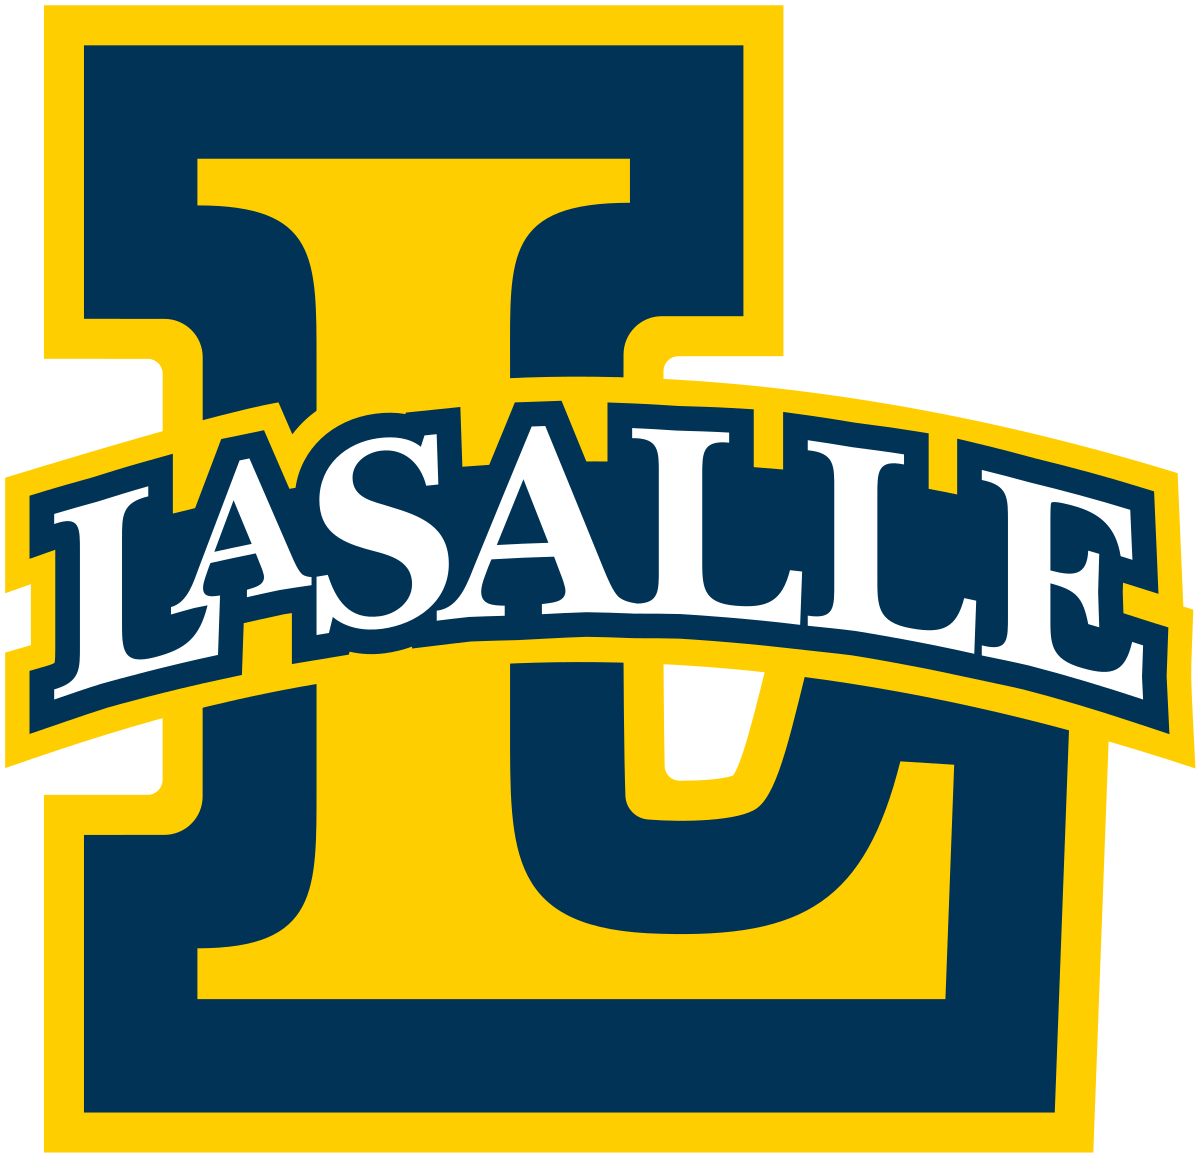 La Salle logo